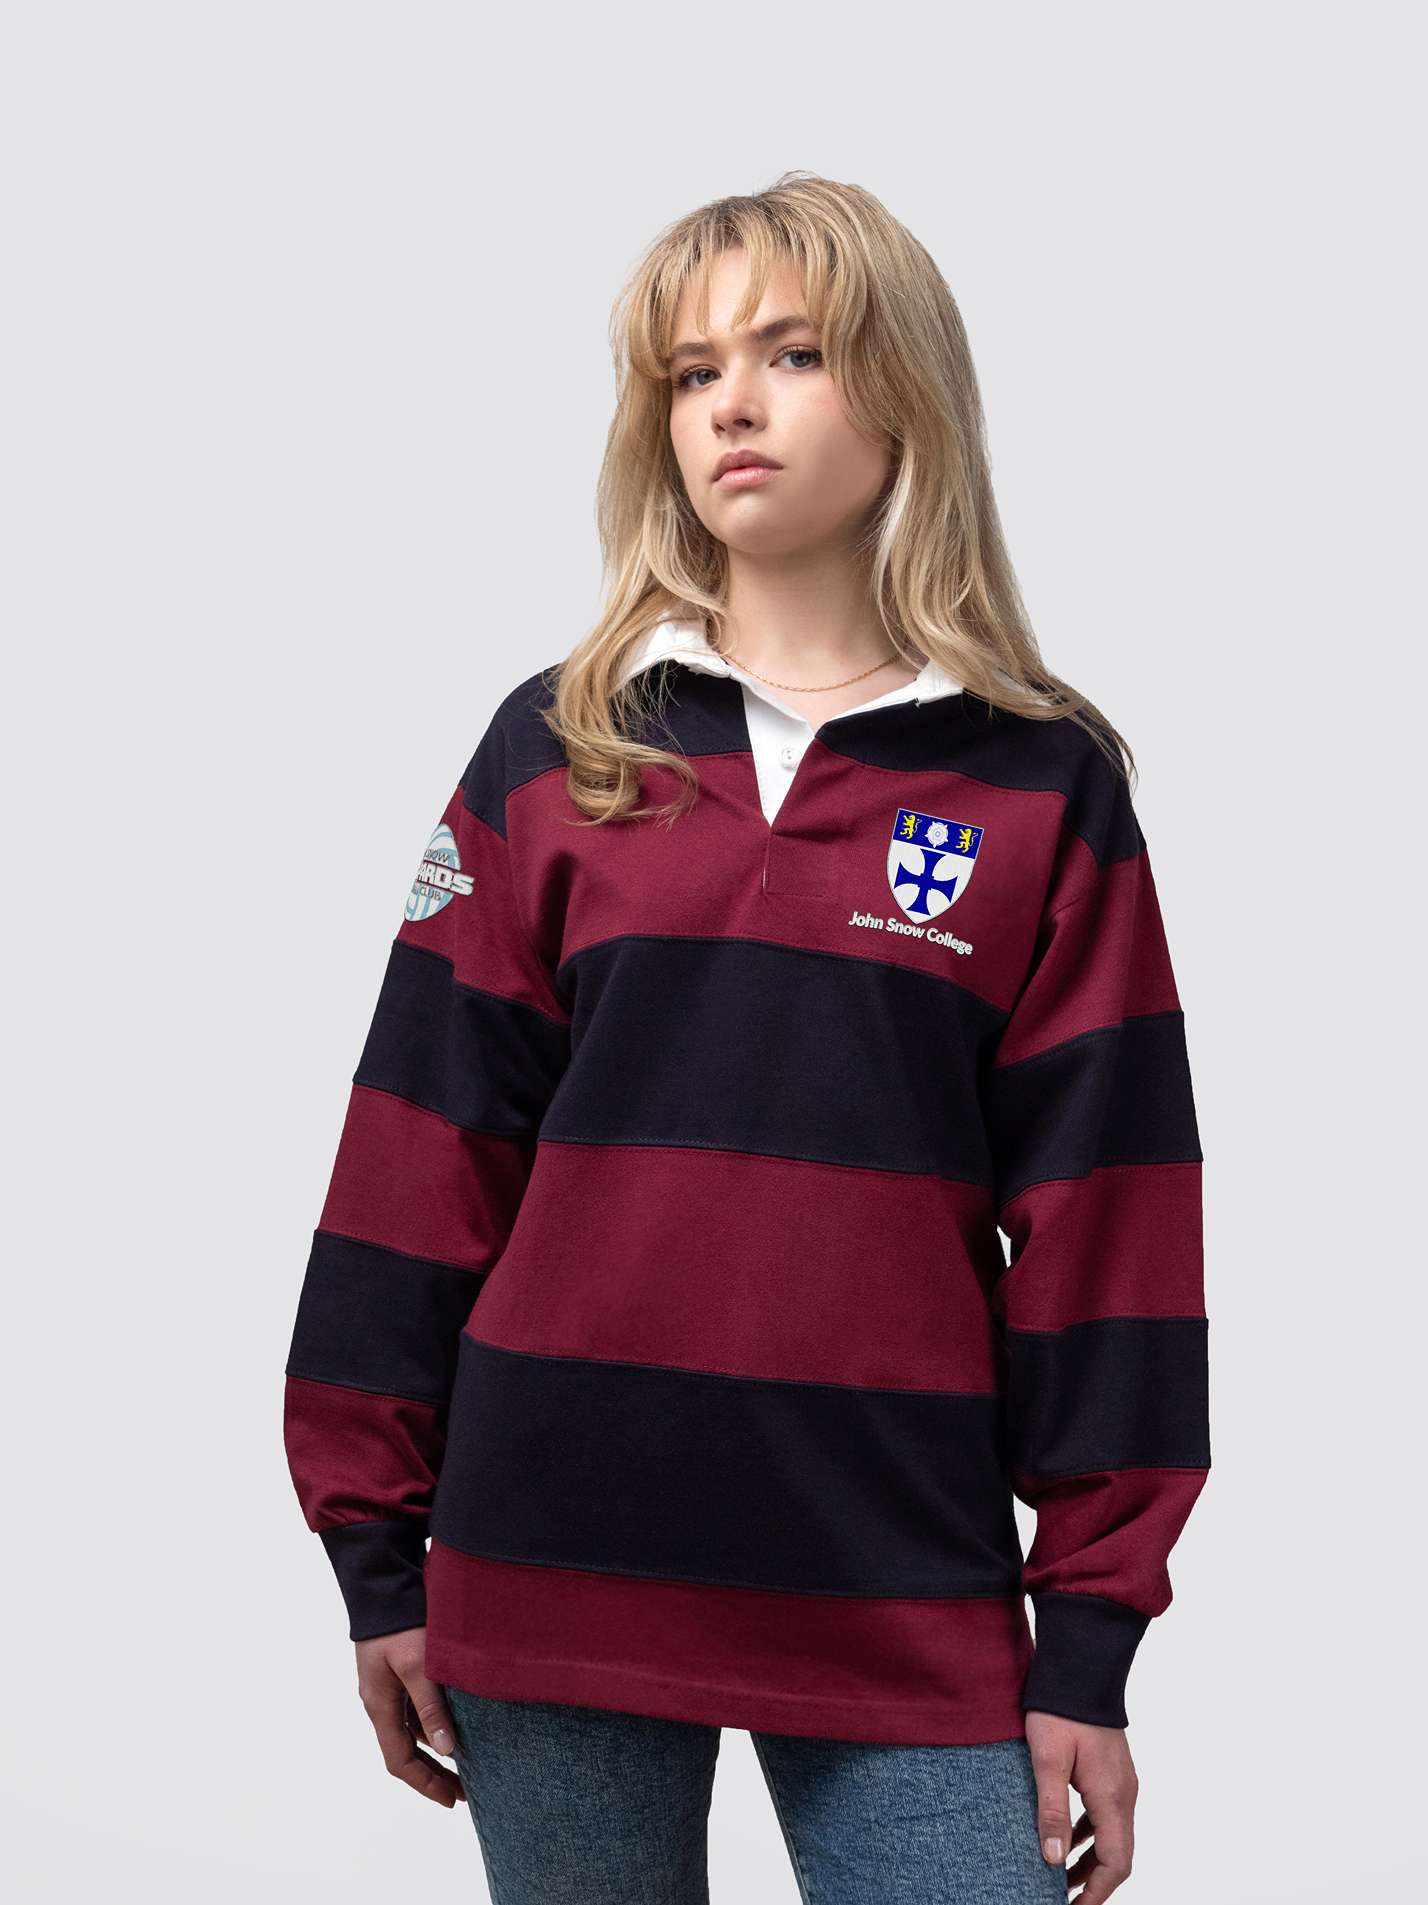 John Snow Netball Club Striped Rugby Shirt